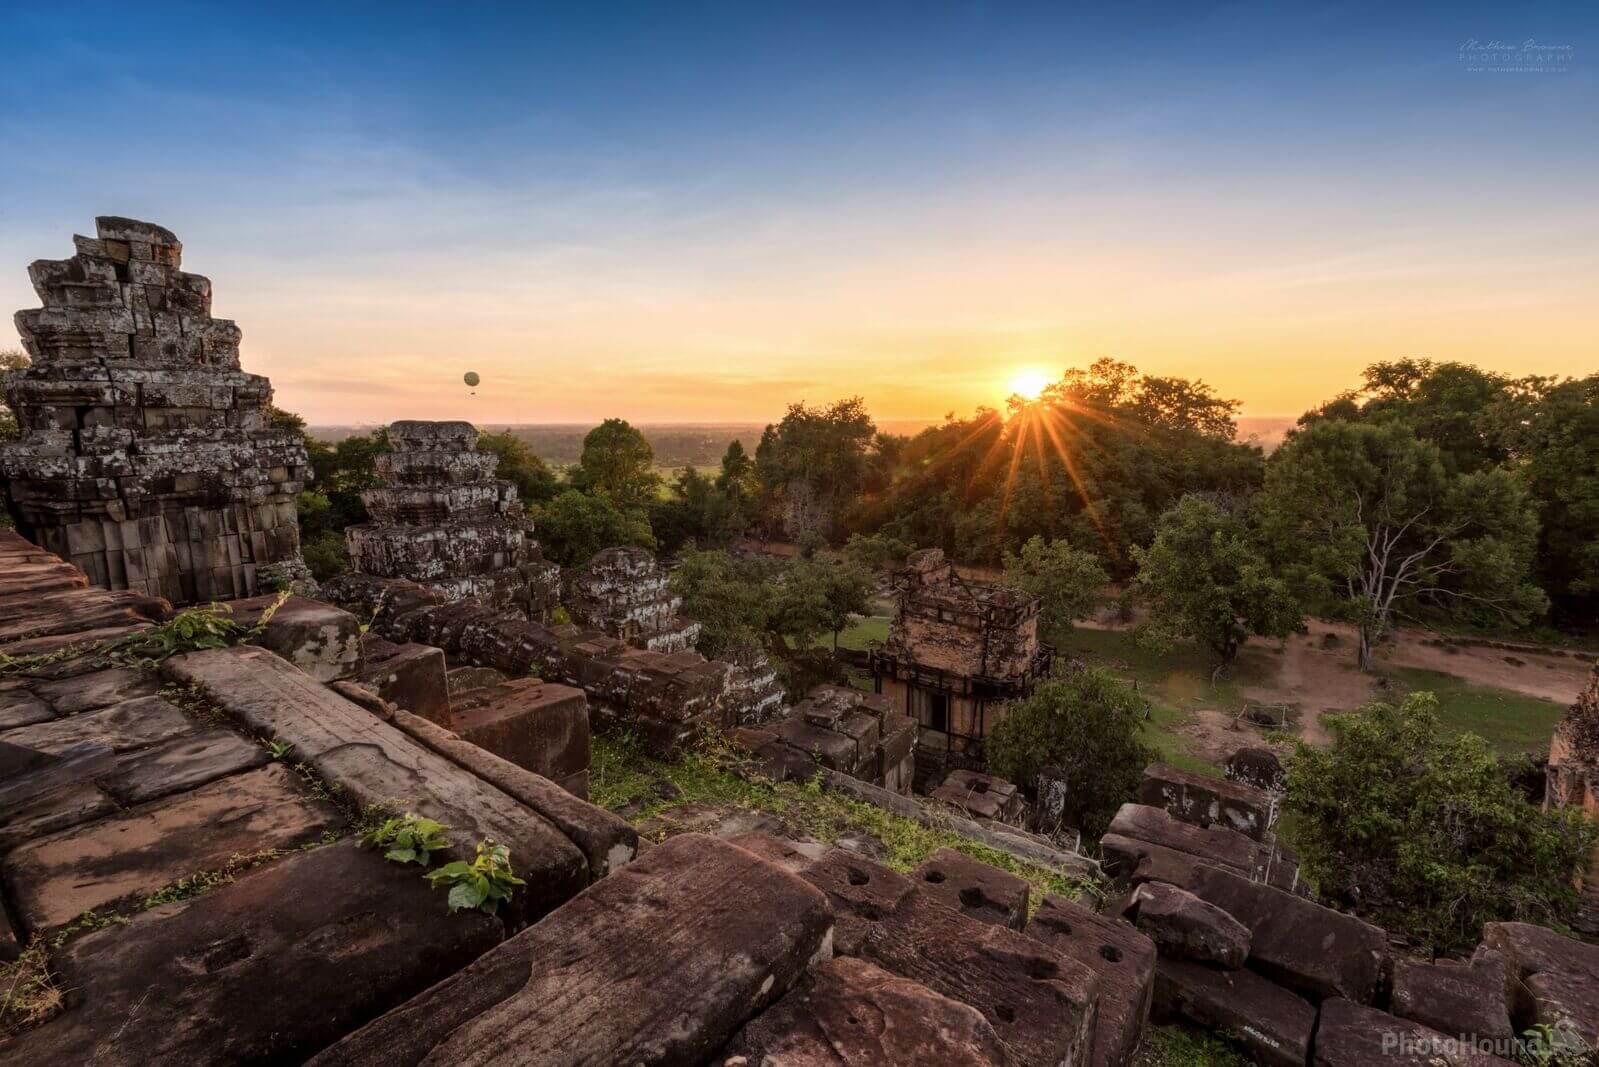 Image of Phnom Bakheng by Mathew Browne